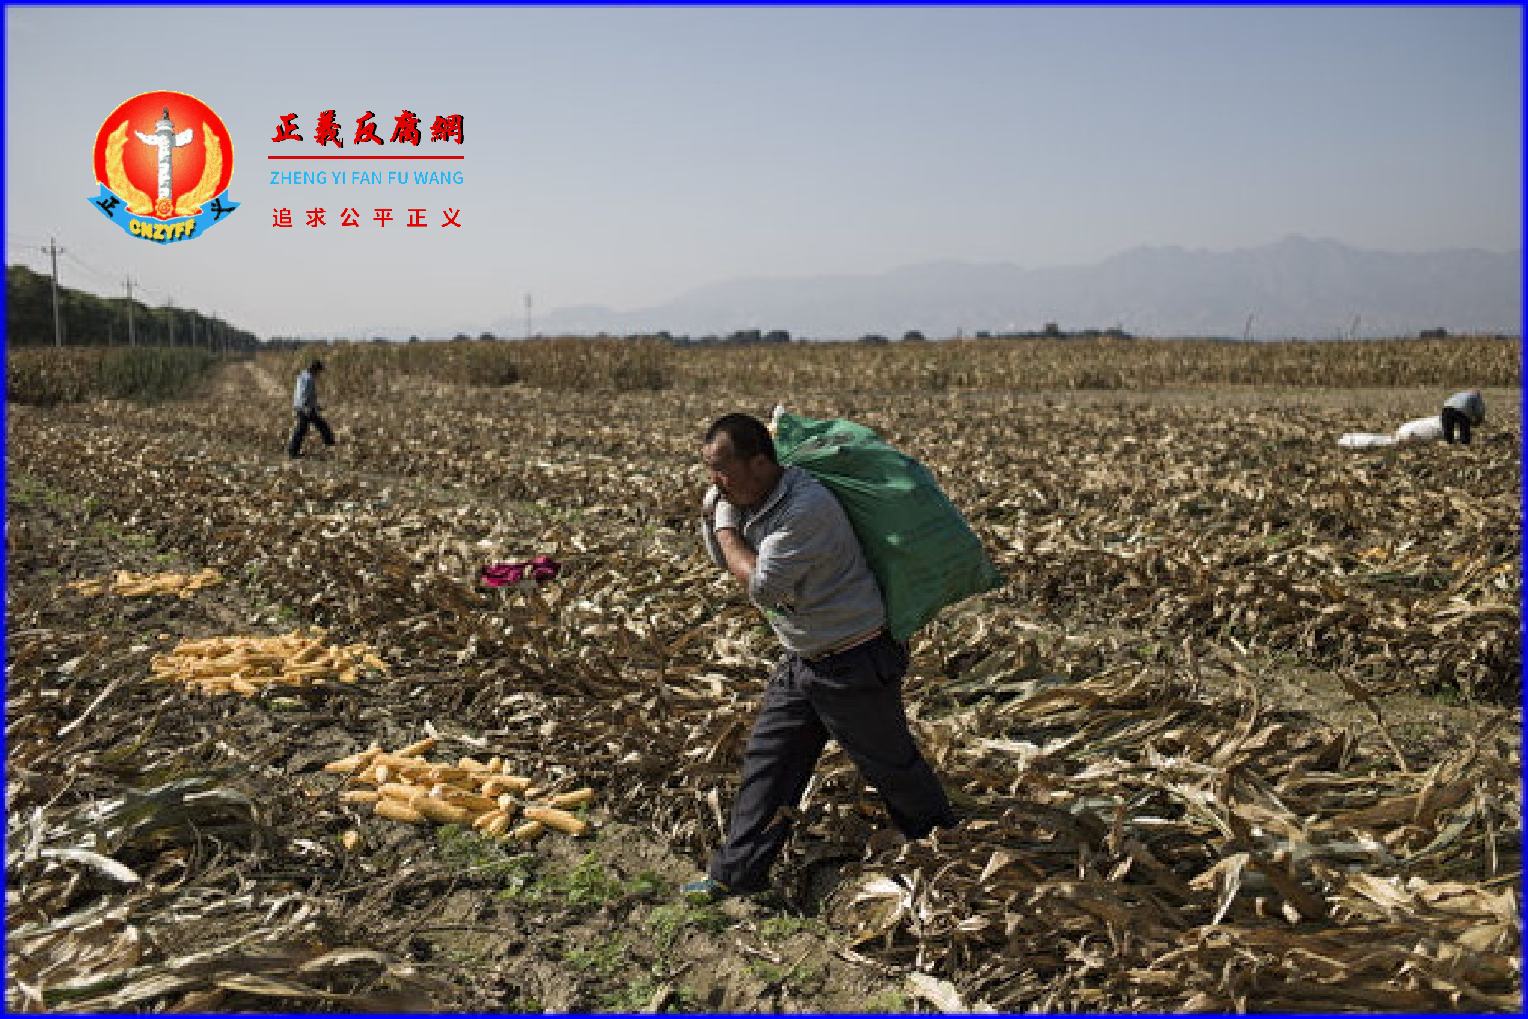 农业农村部部长唐仁健在任上被查。他是大力推广转基因和水稻上山的农业主管官员。图为农民在北京郊区的田地里收割玉米。.png